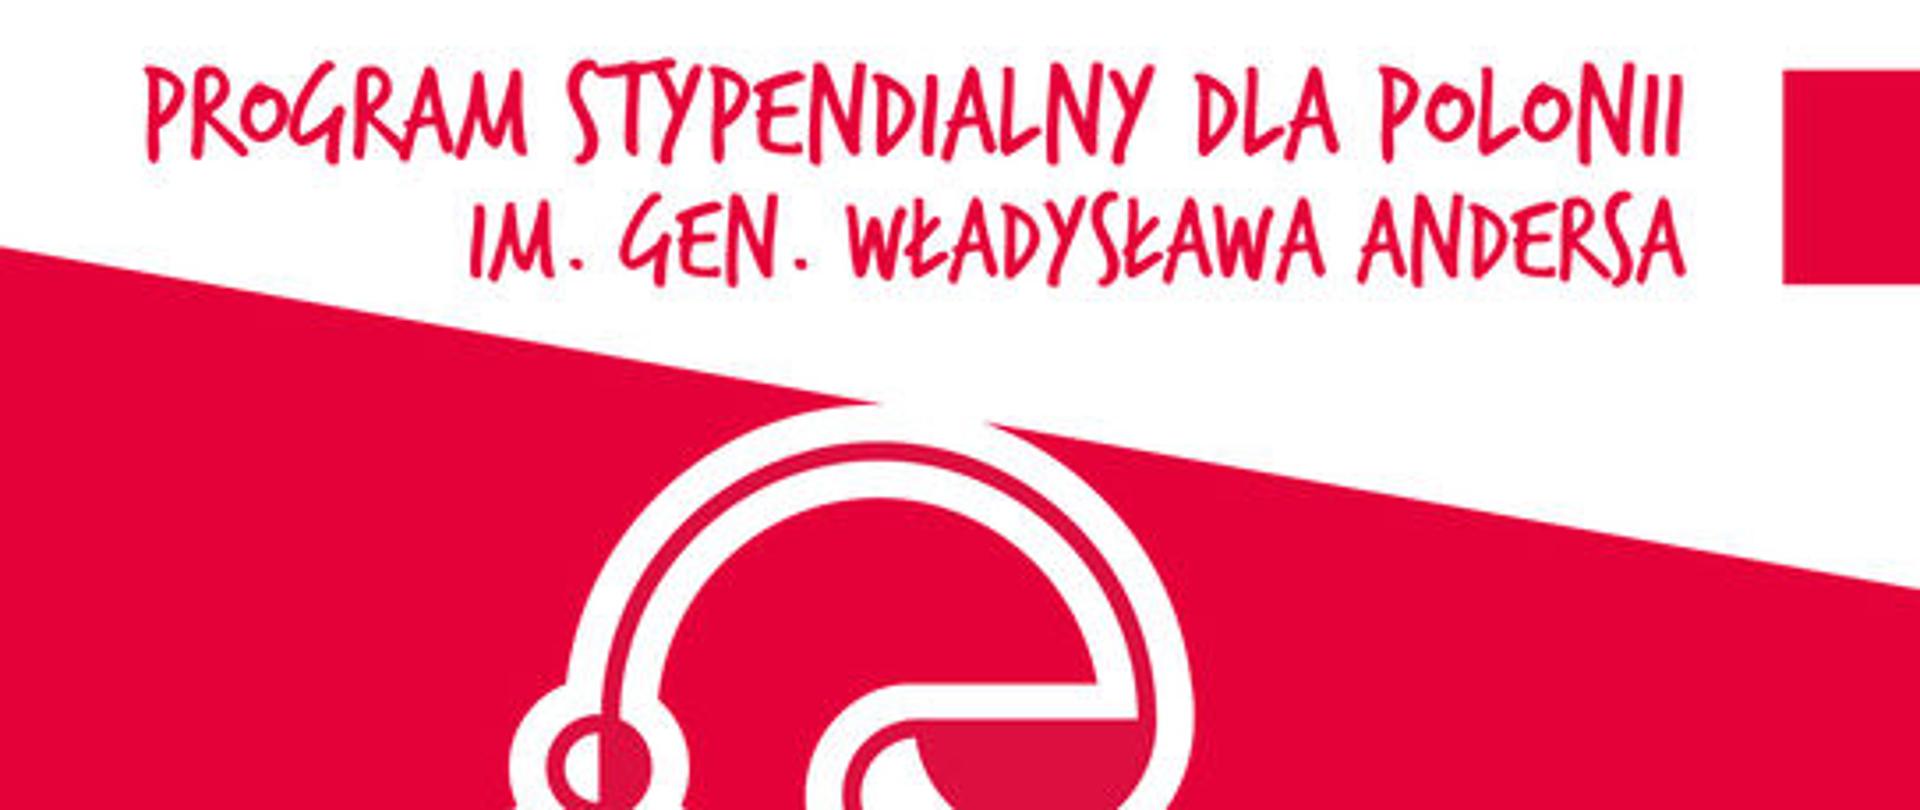 Plakat programu stypendialnego dla Polonii im. gen. Władysława Andersa